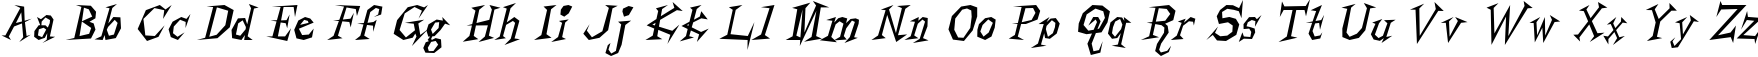 Пример написания английского алфавита шрифтом Living by Numbers